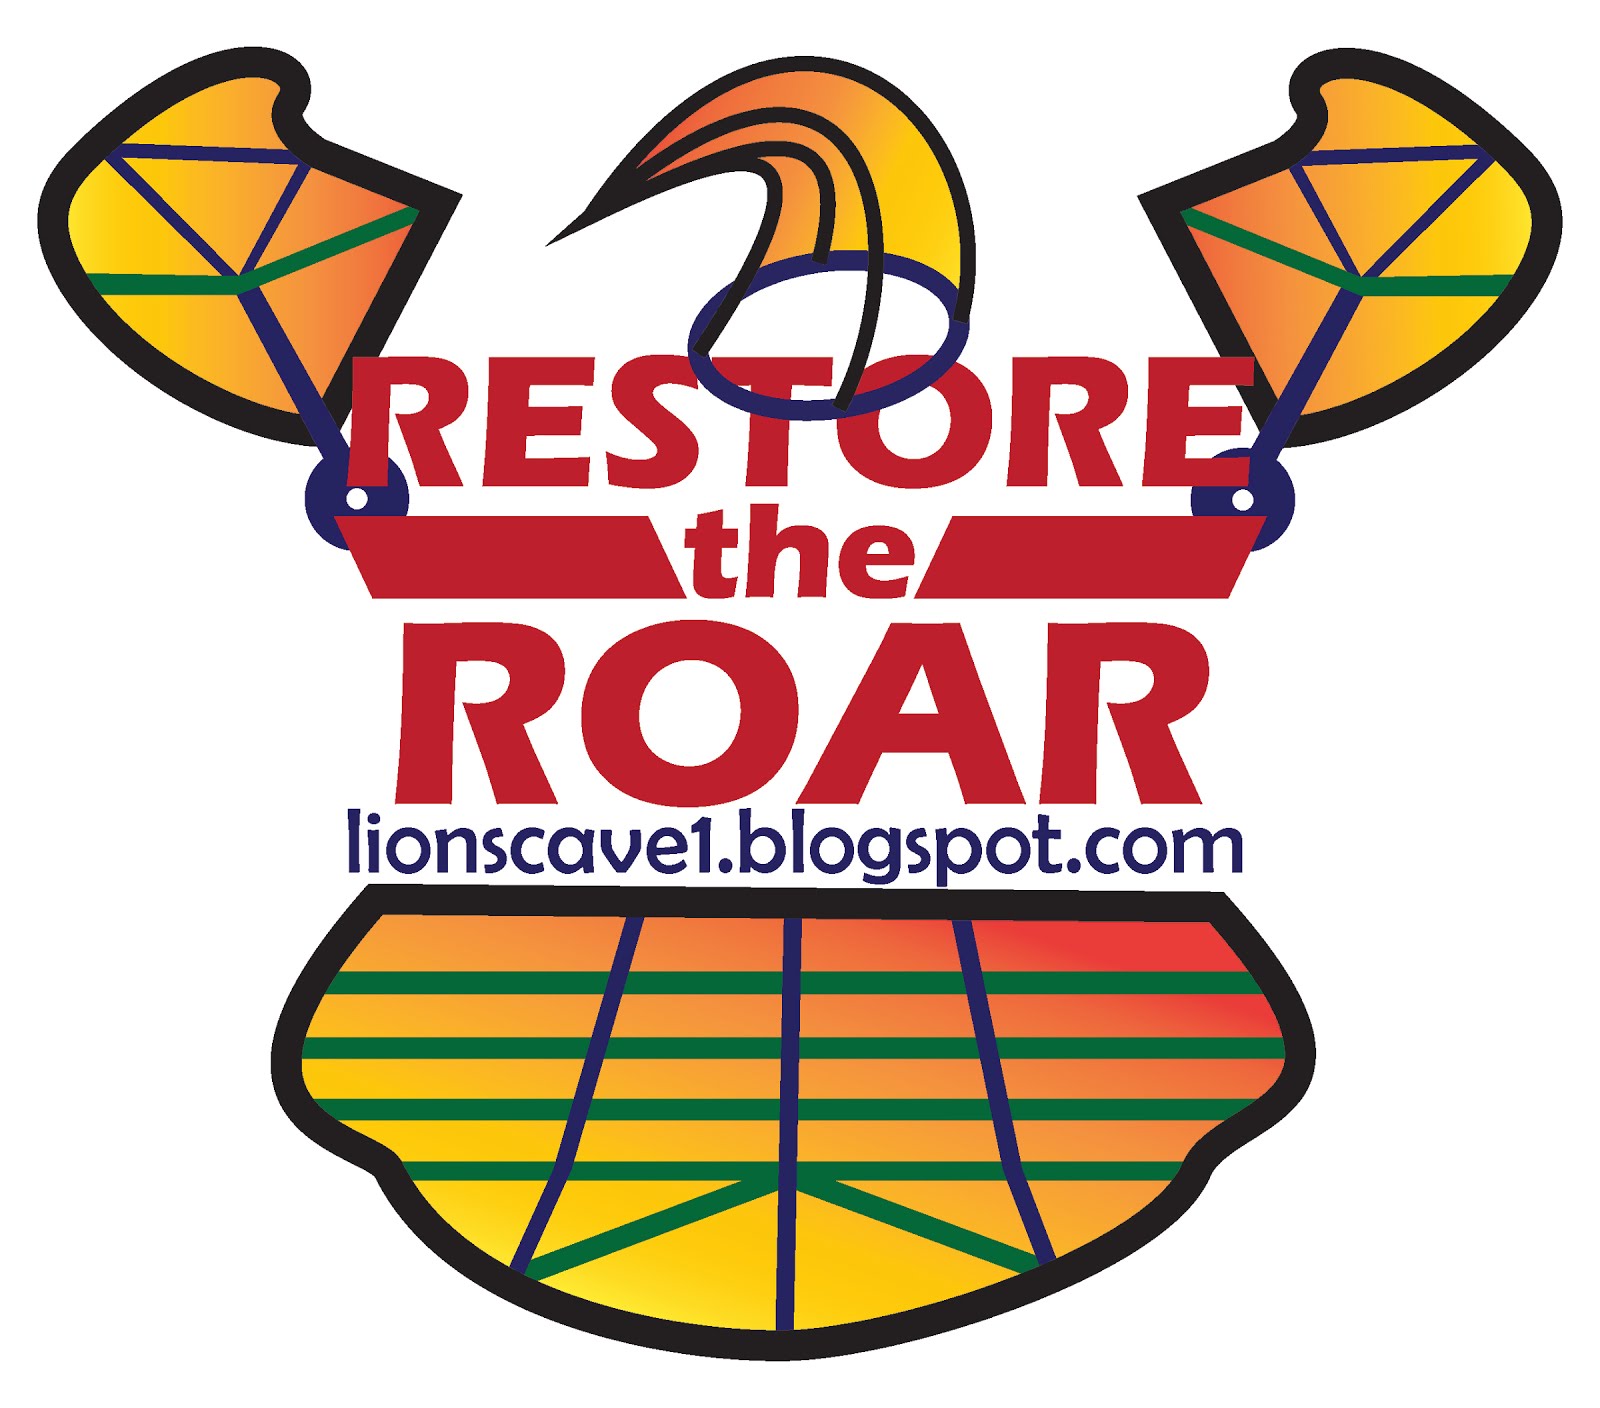 Restore the Roar